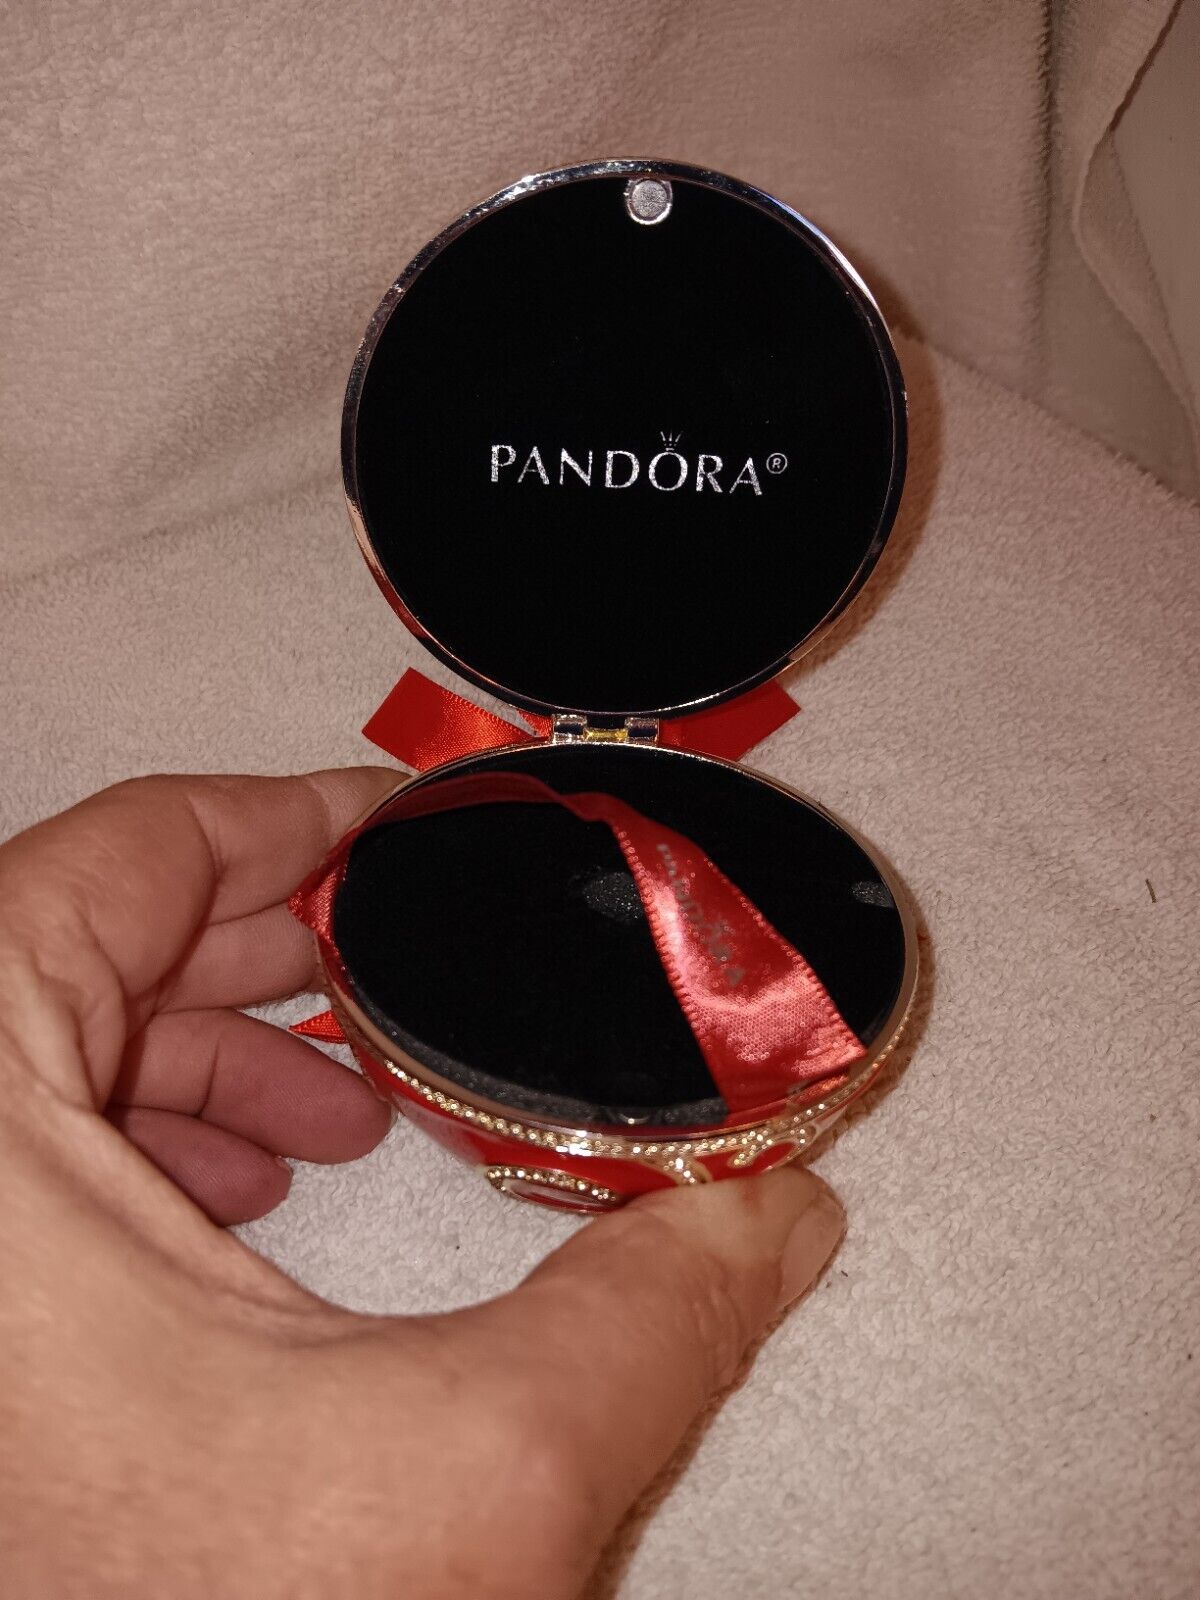 Pandora 2017 Christmas Red Enamel Ornament Box